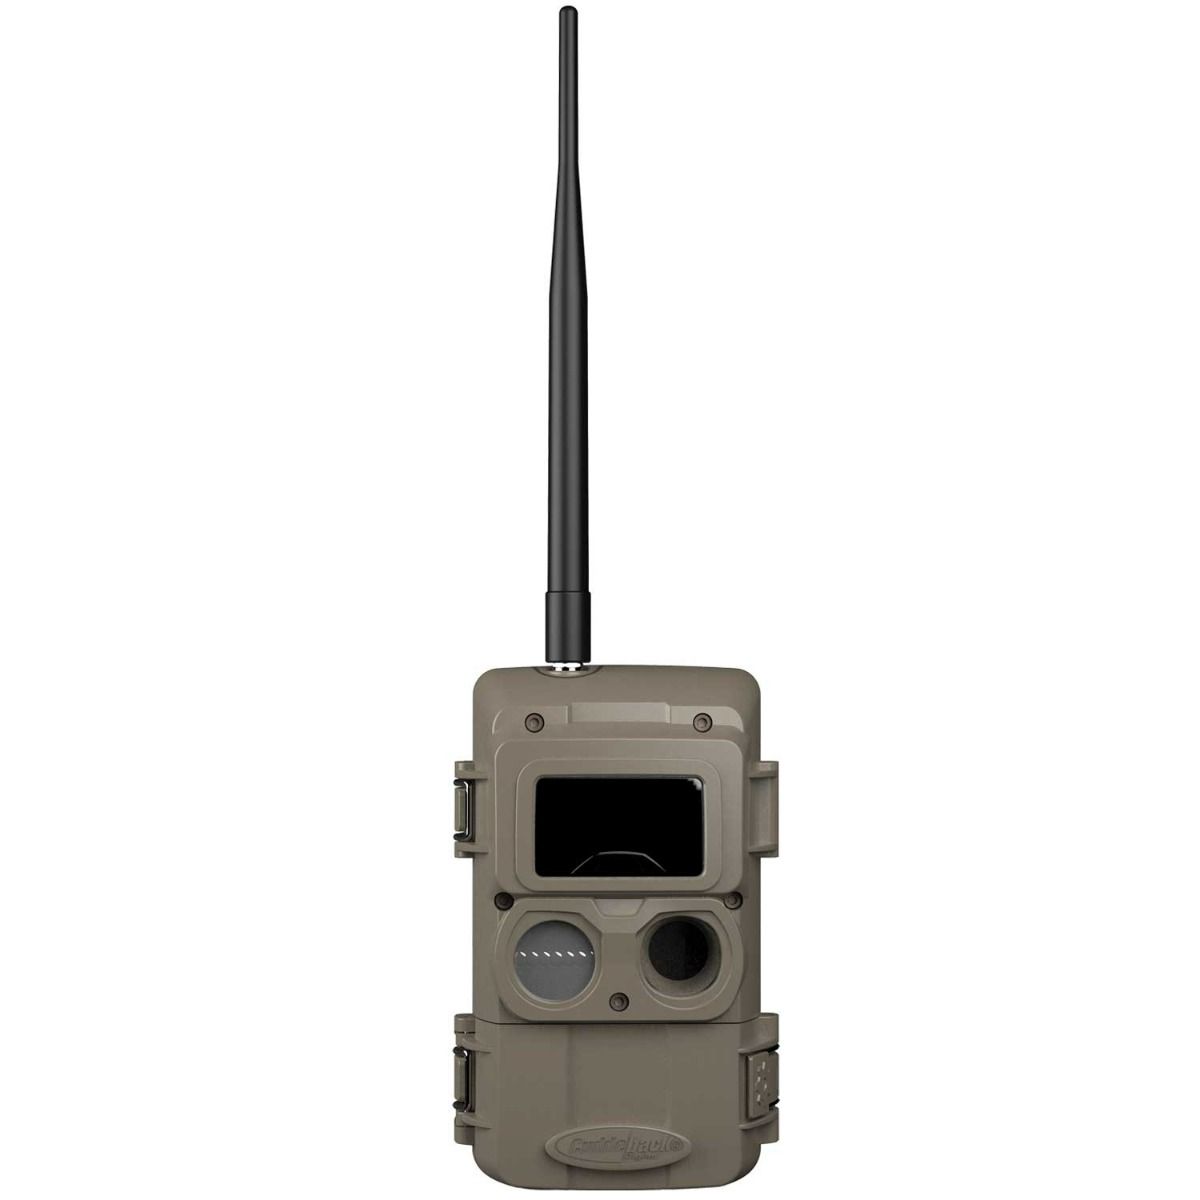 Cuddeback CuddeLink L IR Remote Camera Model LL-2A